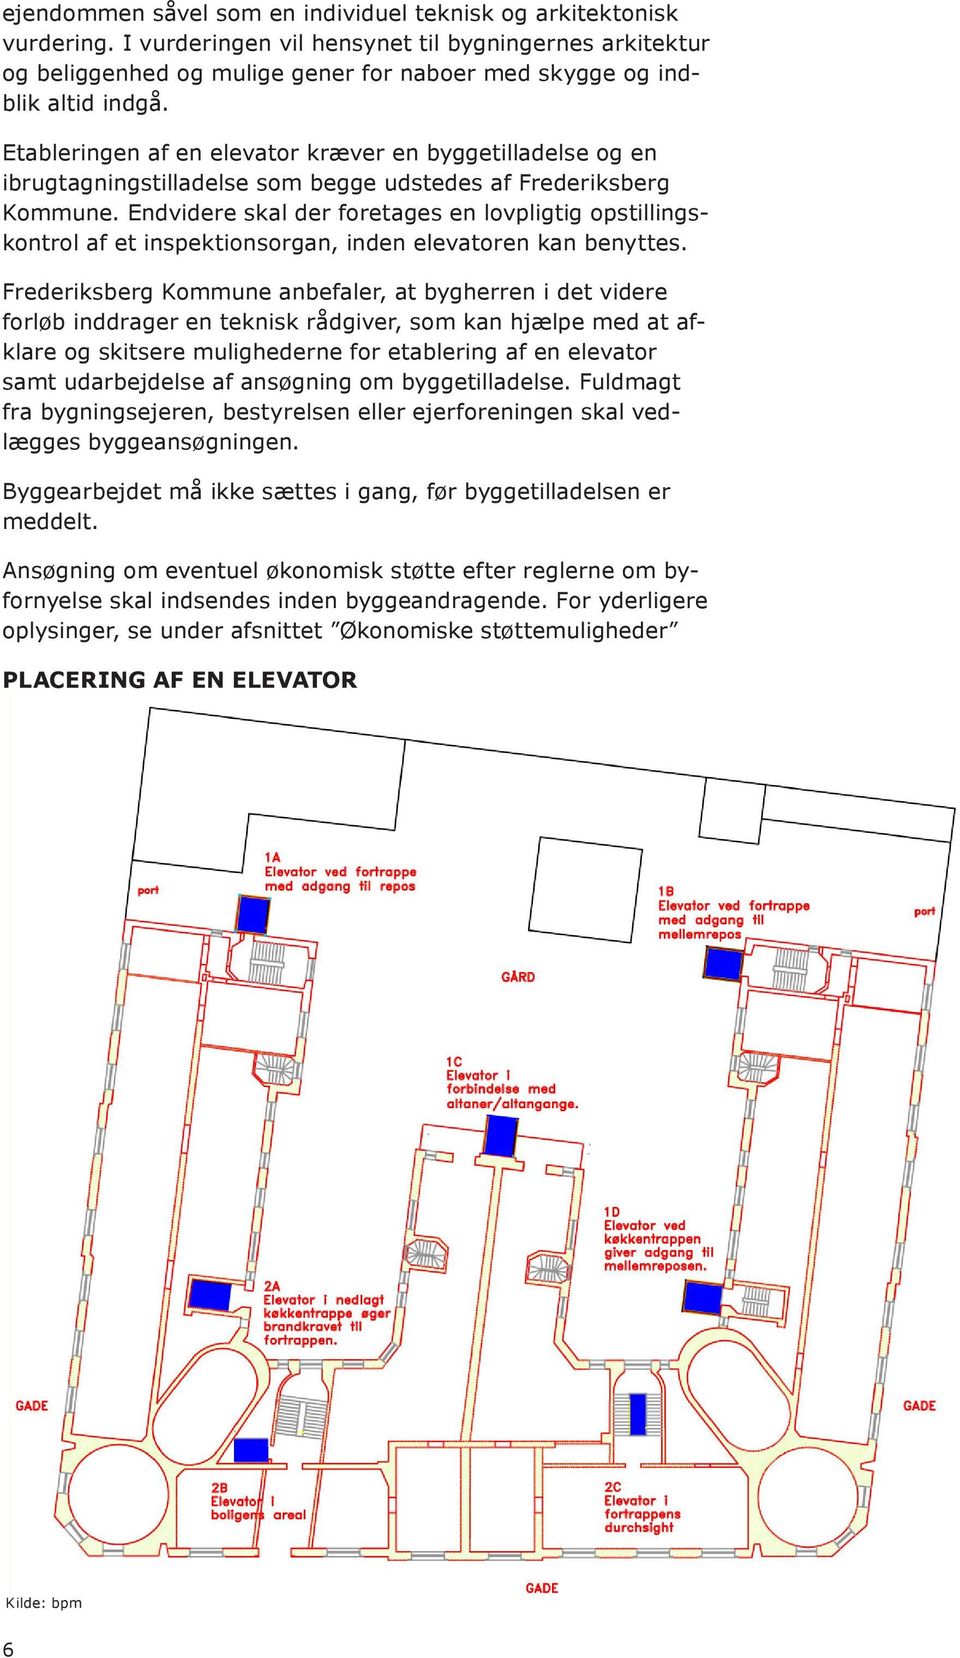 Etableringen af en elevator kræver en byggetilladelse og en ibrugtagningstilladelse som begge udstedes af Frederiksberg Kommune.